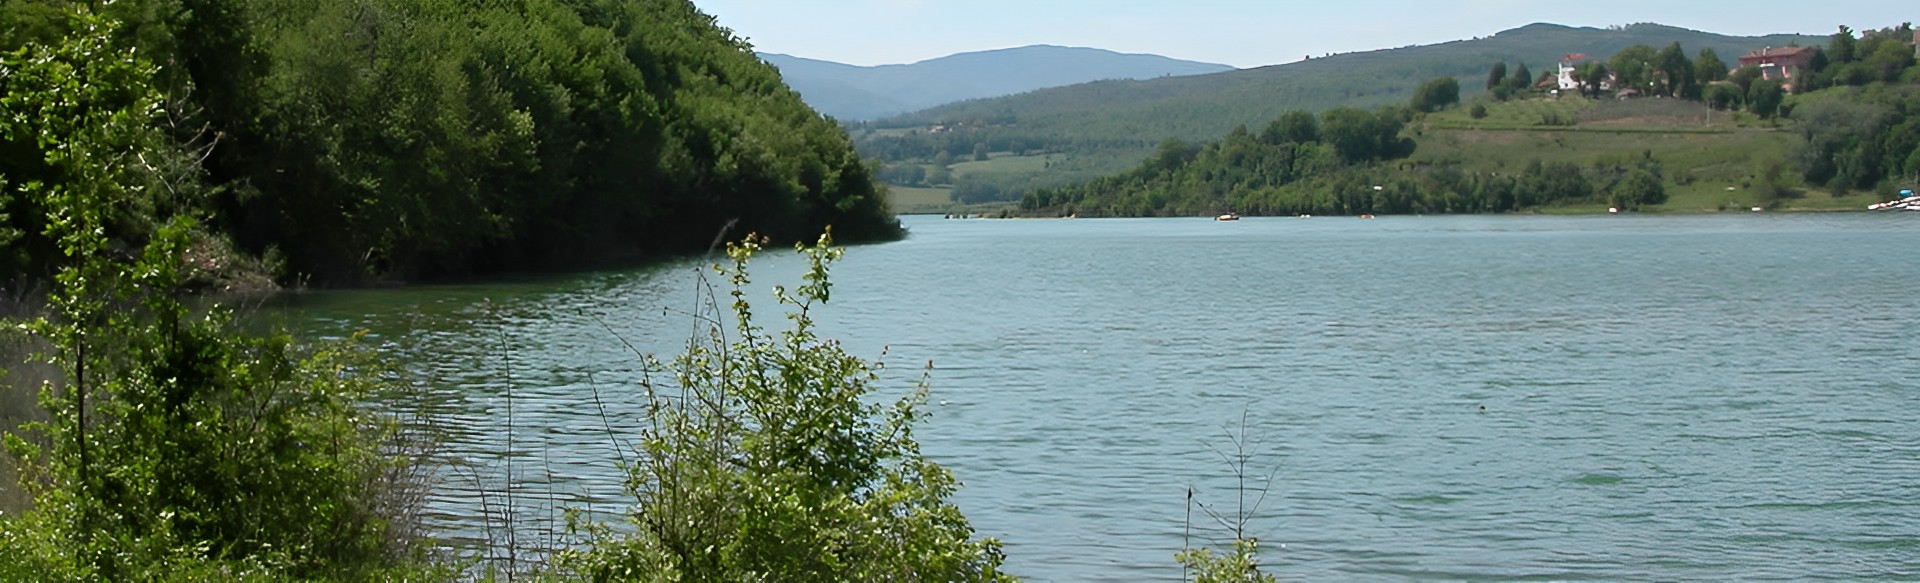 Pescare nel lago di Montedoglio